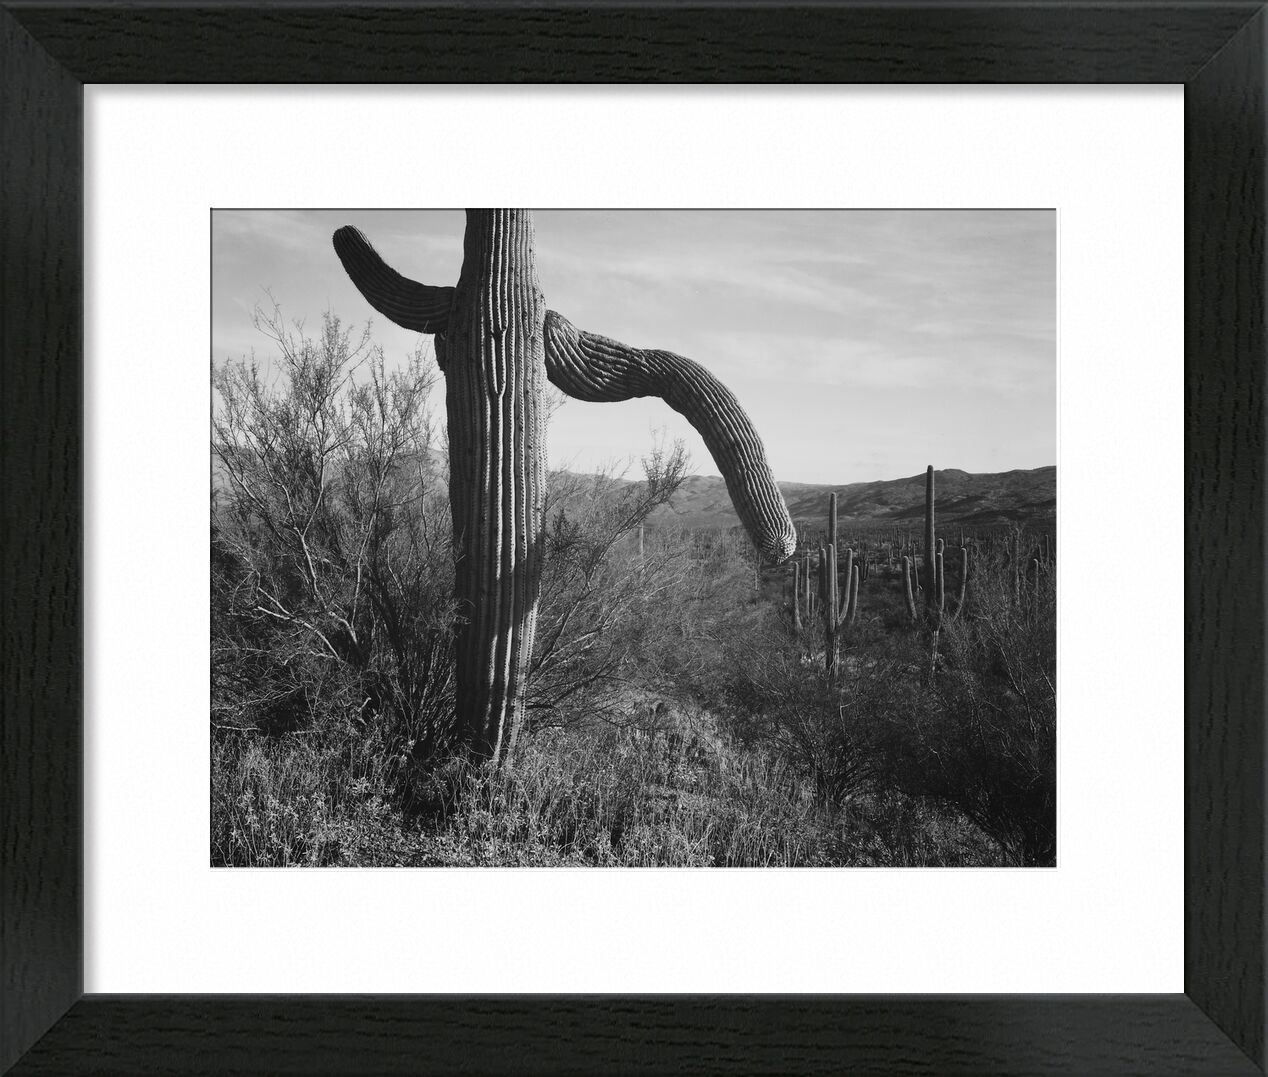 Cactus At Left And Surroundings - Ansel Adams von Bildende Kunst, Prodi Art, ANSEL ADAMS, Kaktus, Wildnis, Schwarz und weiß